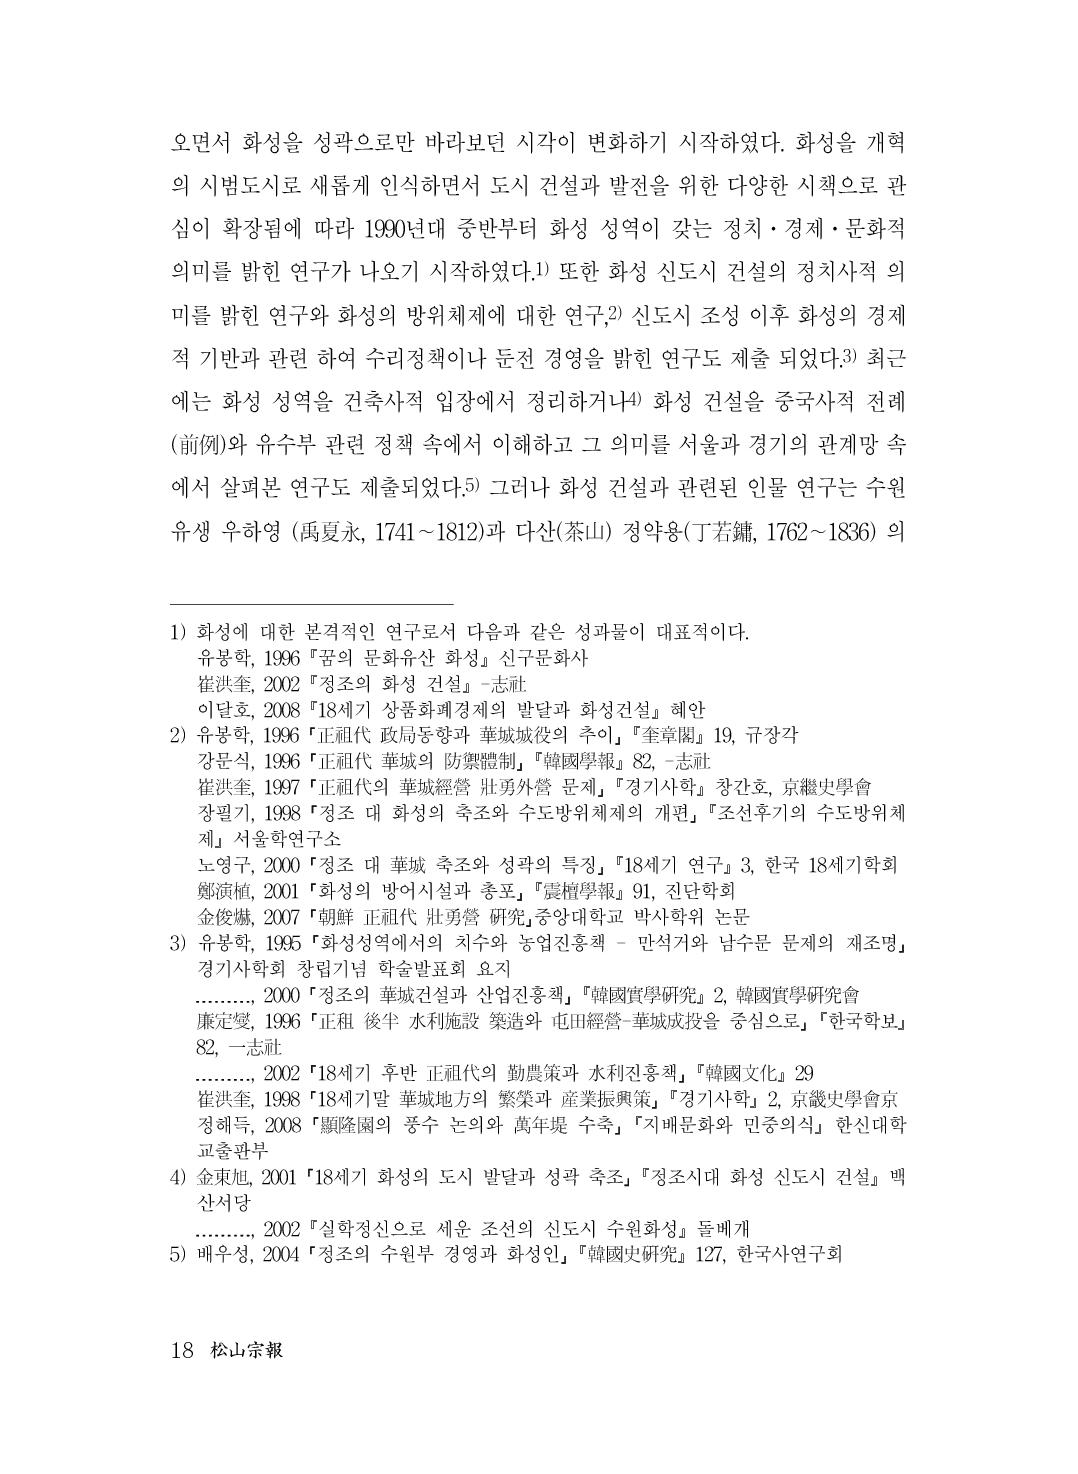 (전체) 송산종보(27호)(최종)_19.jpg